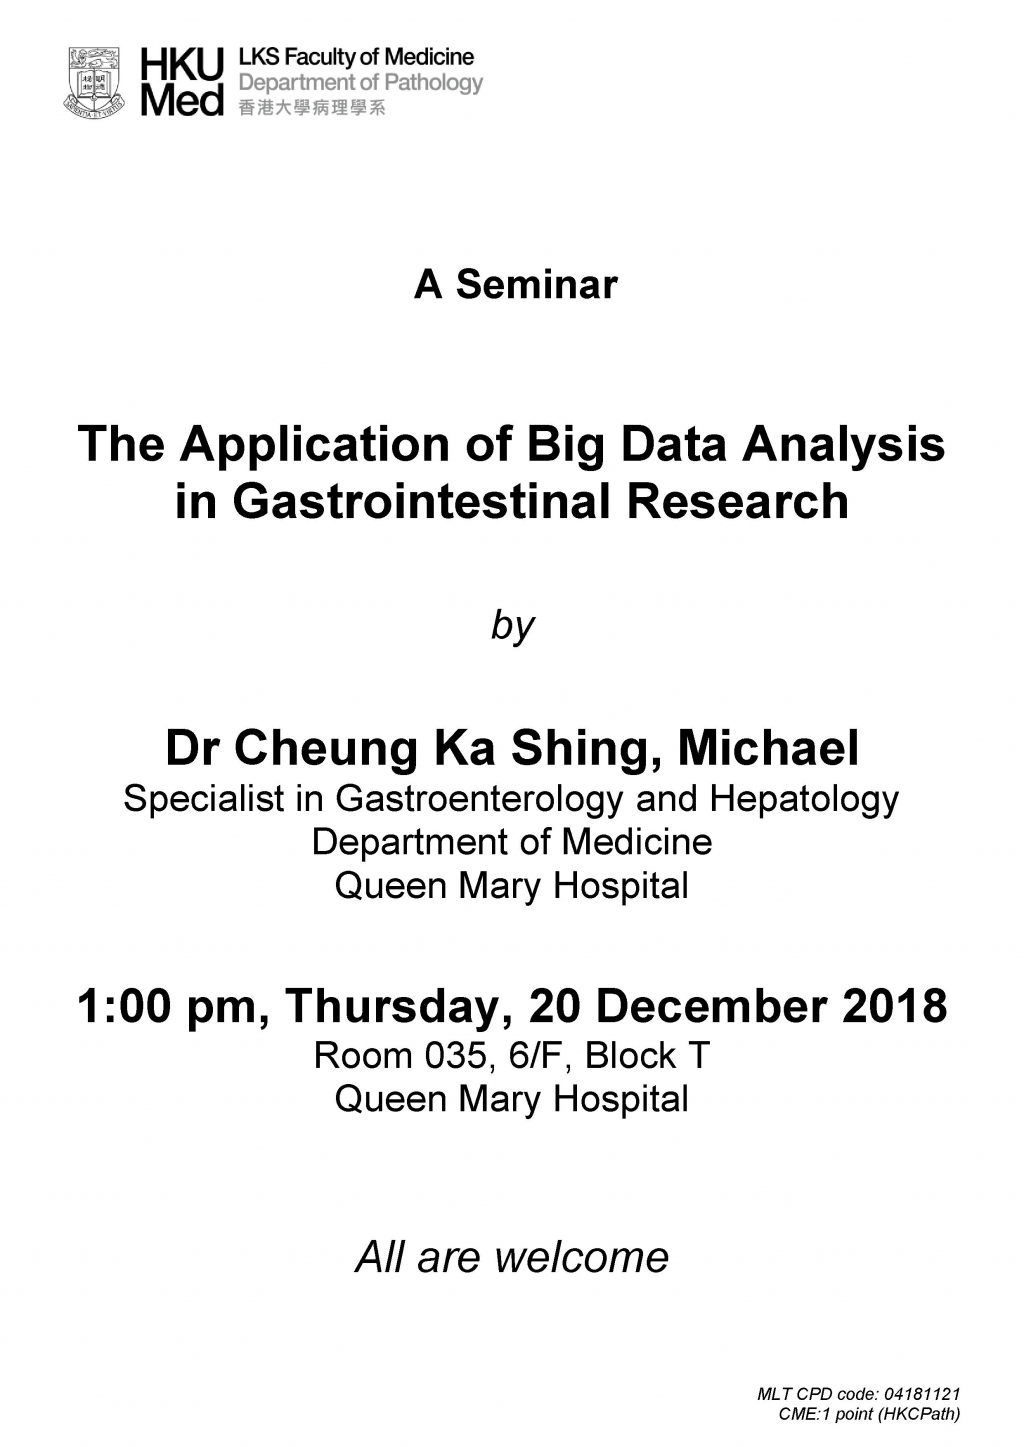 A Seminar by Dr Cheung Ka Shing, Michael on 20 Dec (1 pm)